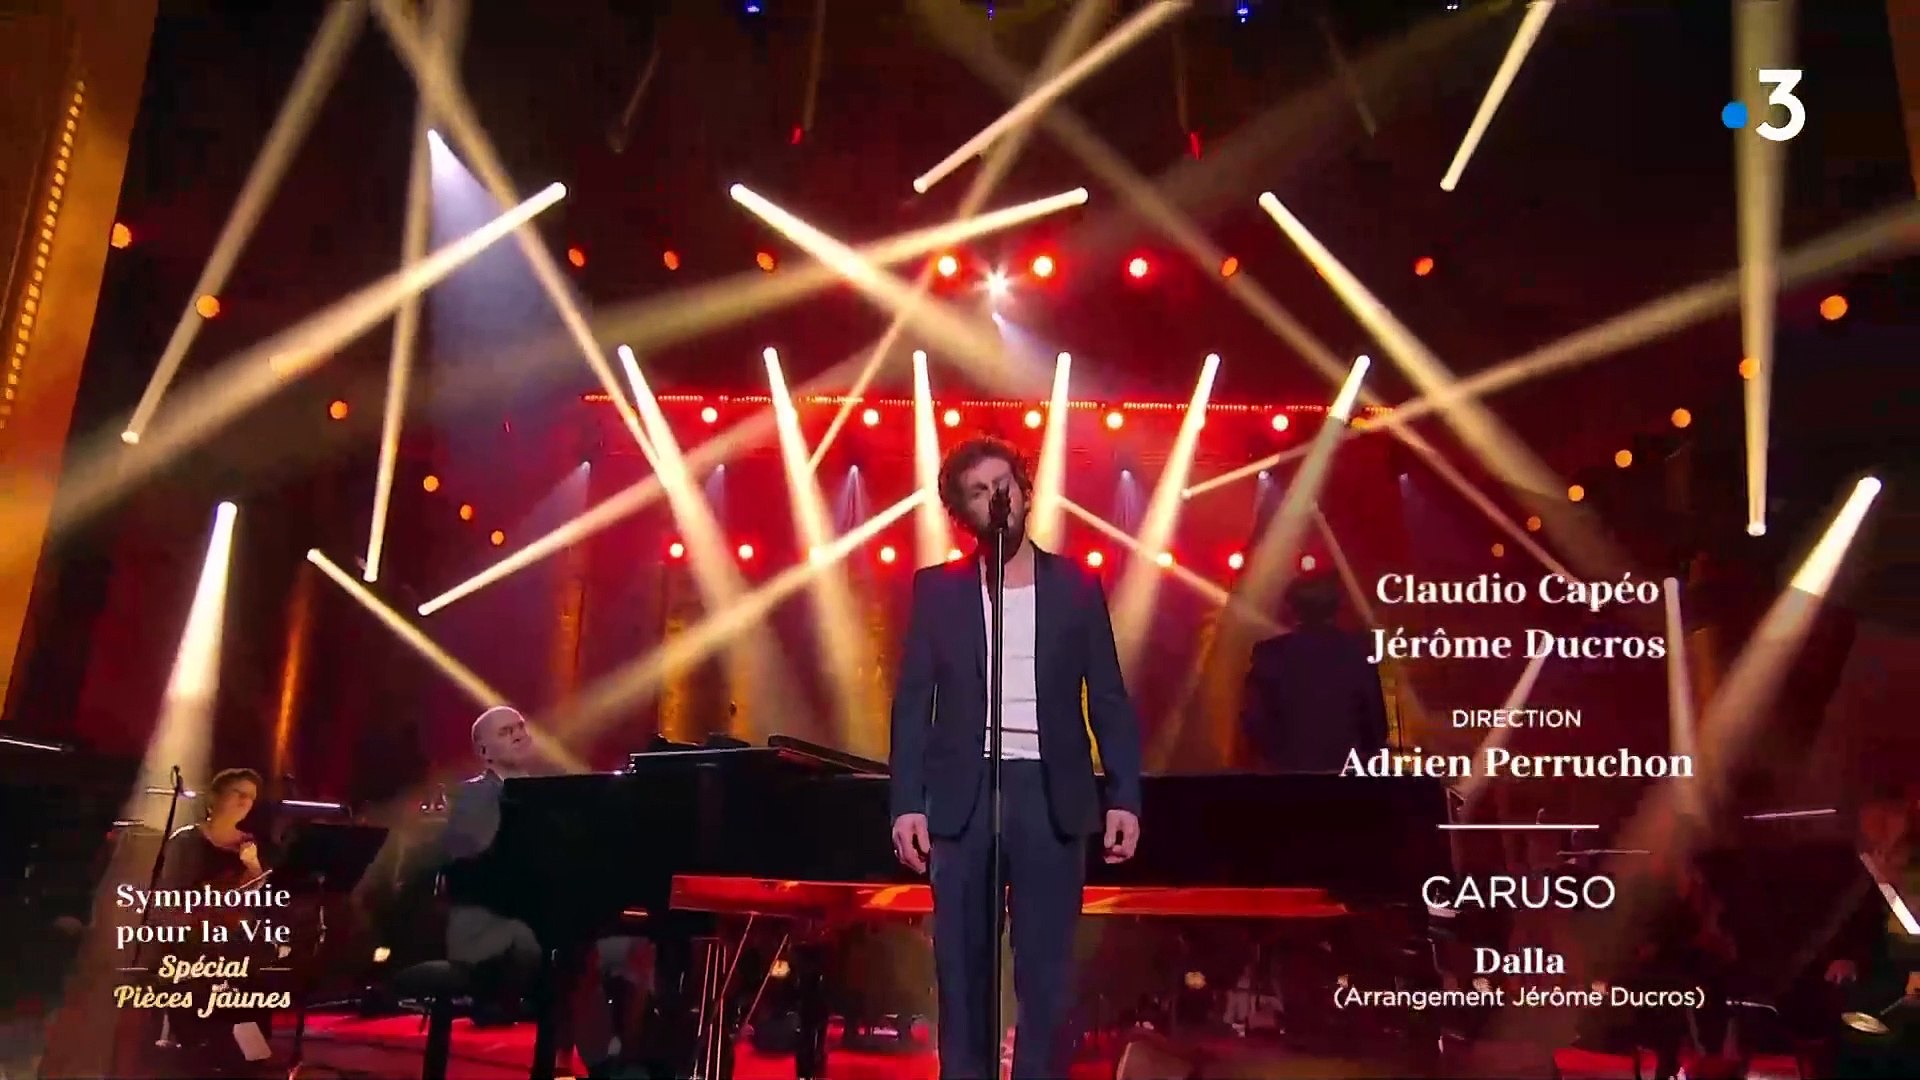 Claudio Capéo reprend "Caruso" en live sur France 3 - Vidéo Dailymotion